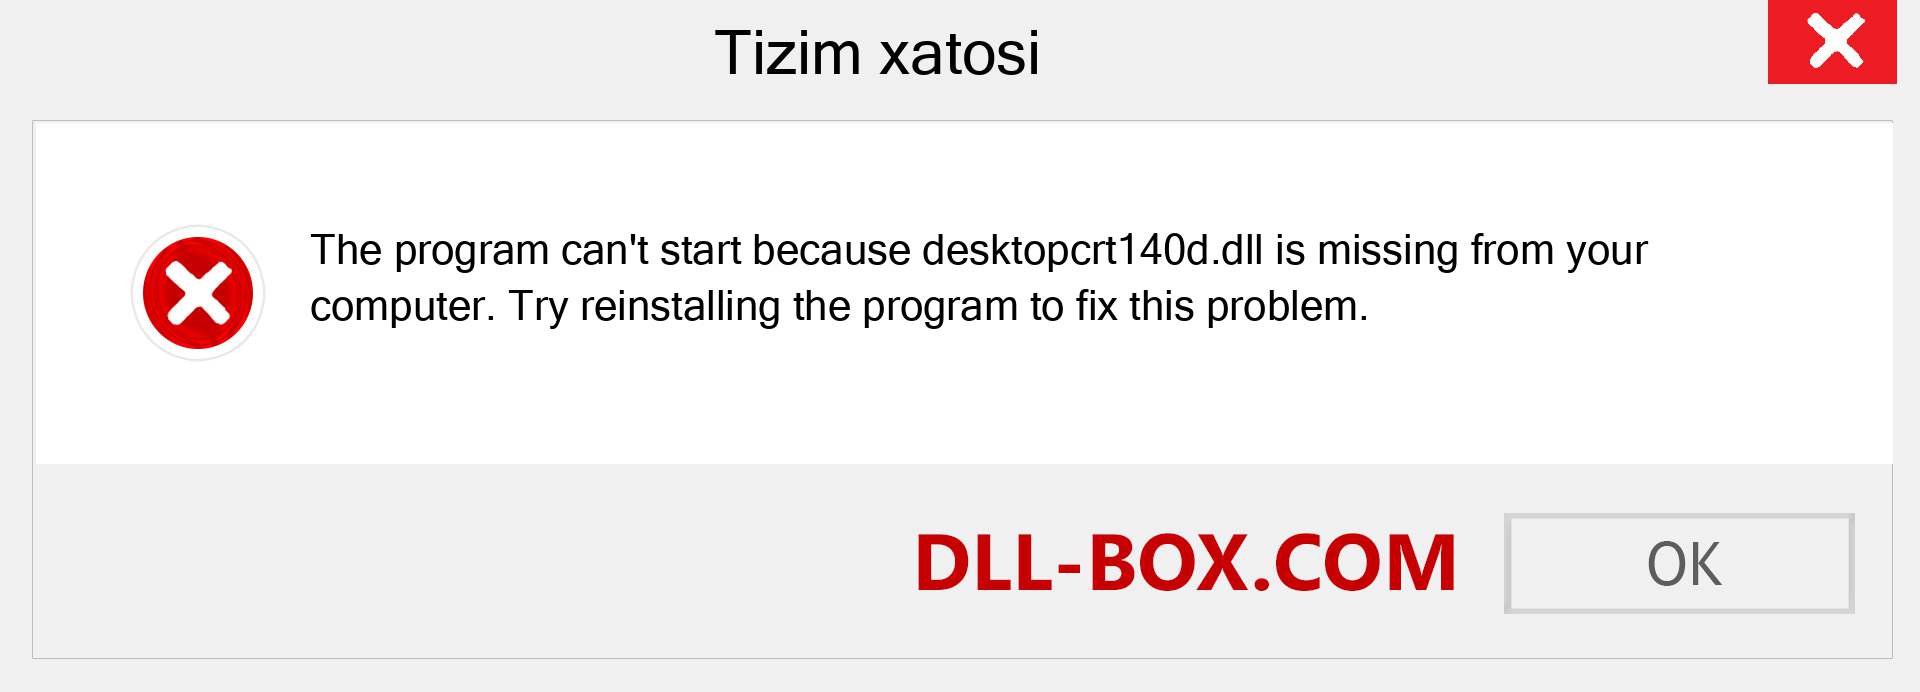 desktopcrt140d.dll fayli yo'qolganmi?. Windows 7, 8, 10 uchun yuklab olish - Windowsda desktopcrt140d dll etishmayotgan xatoni tuzating, rasmlar, rasmlar